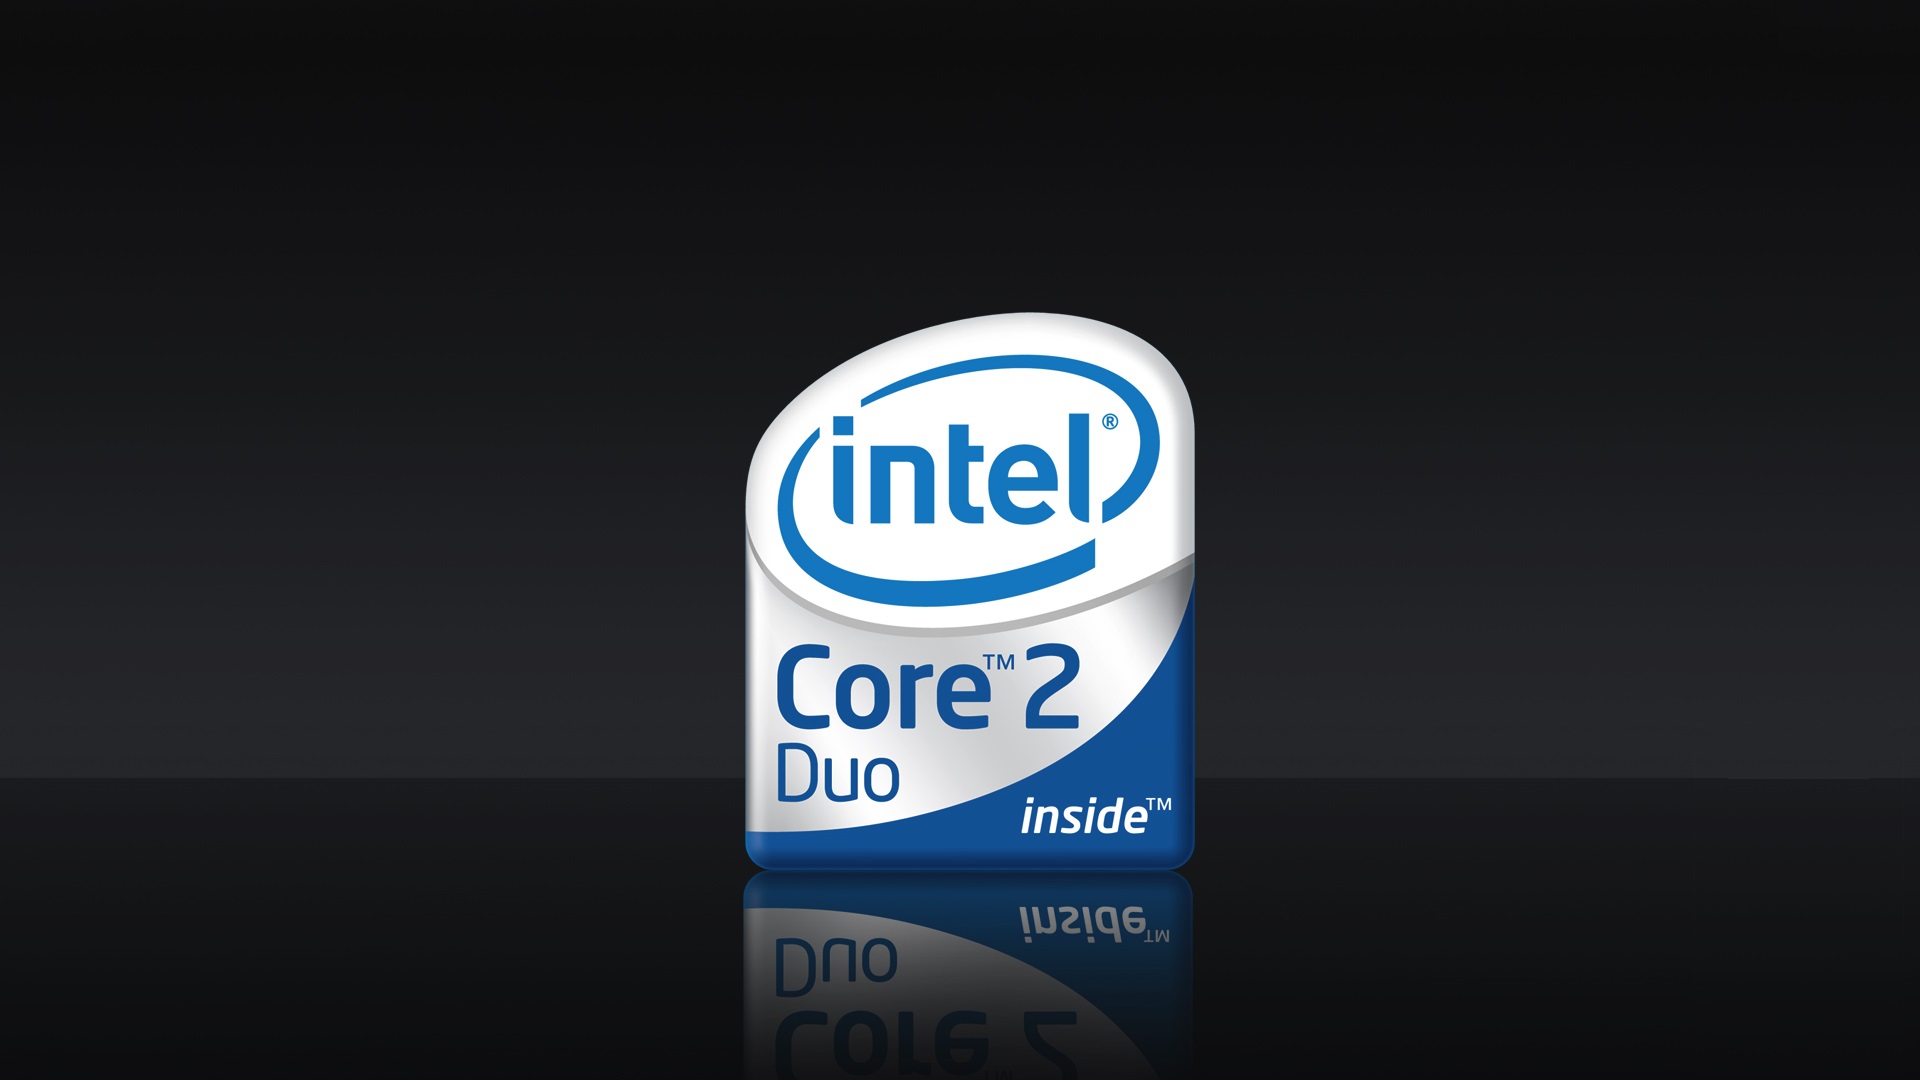 Интел сор. Интел Core 2 Duo. Intel Core 2 Duo logo. Intel Core 2 Duo inside. Интел пентиум логотип 2 Core.